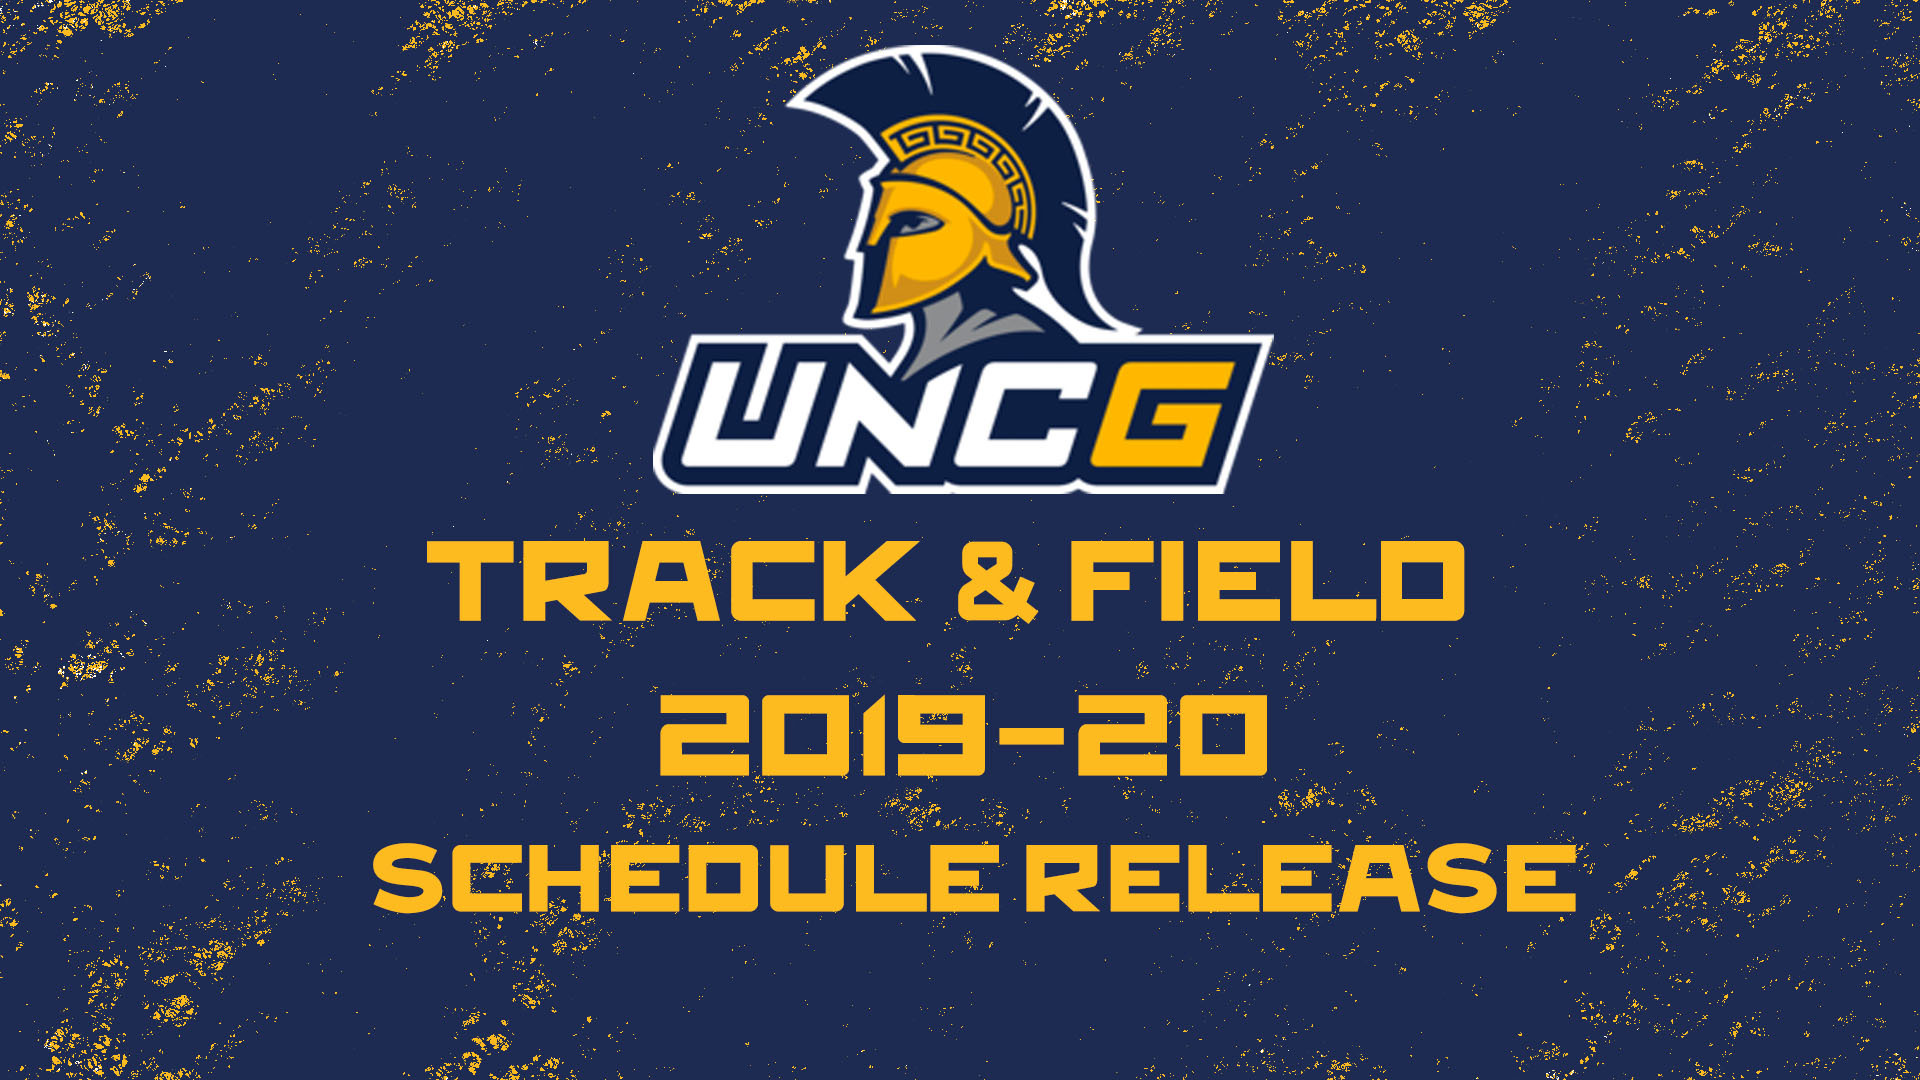 Uncg Track Field Schedule Announced Unc Greensboro